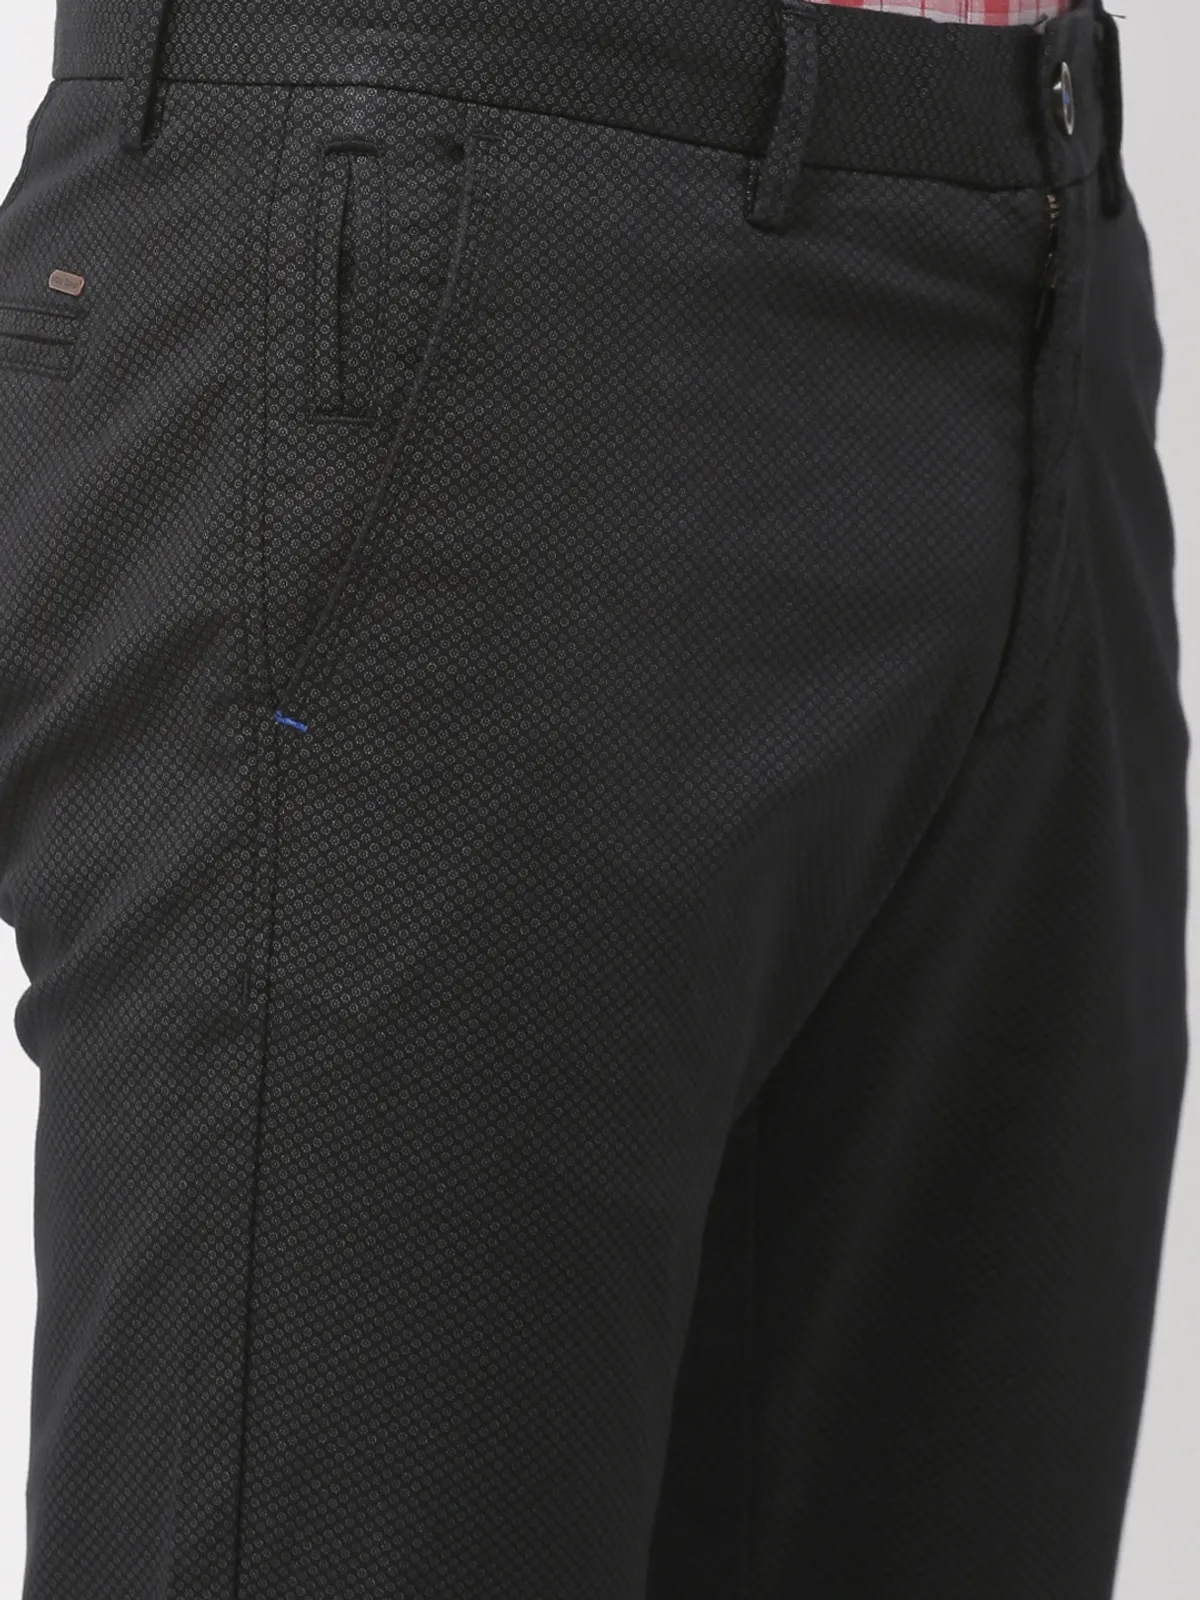 Indian Terrain printed black color trouser